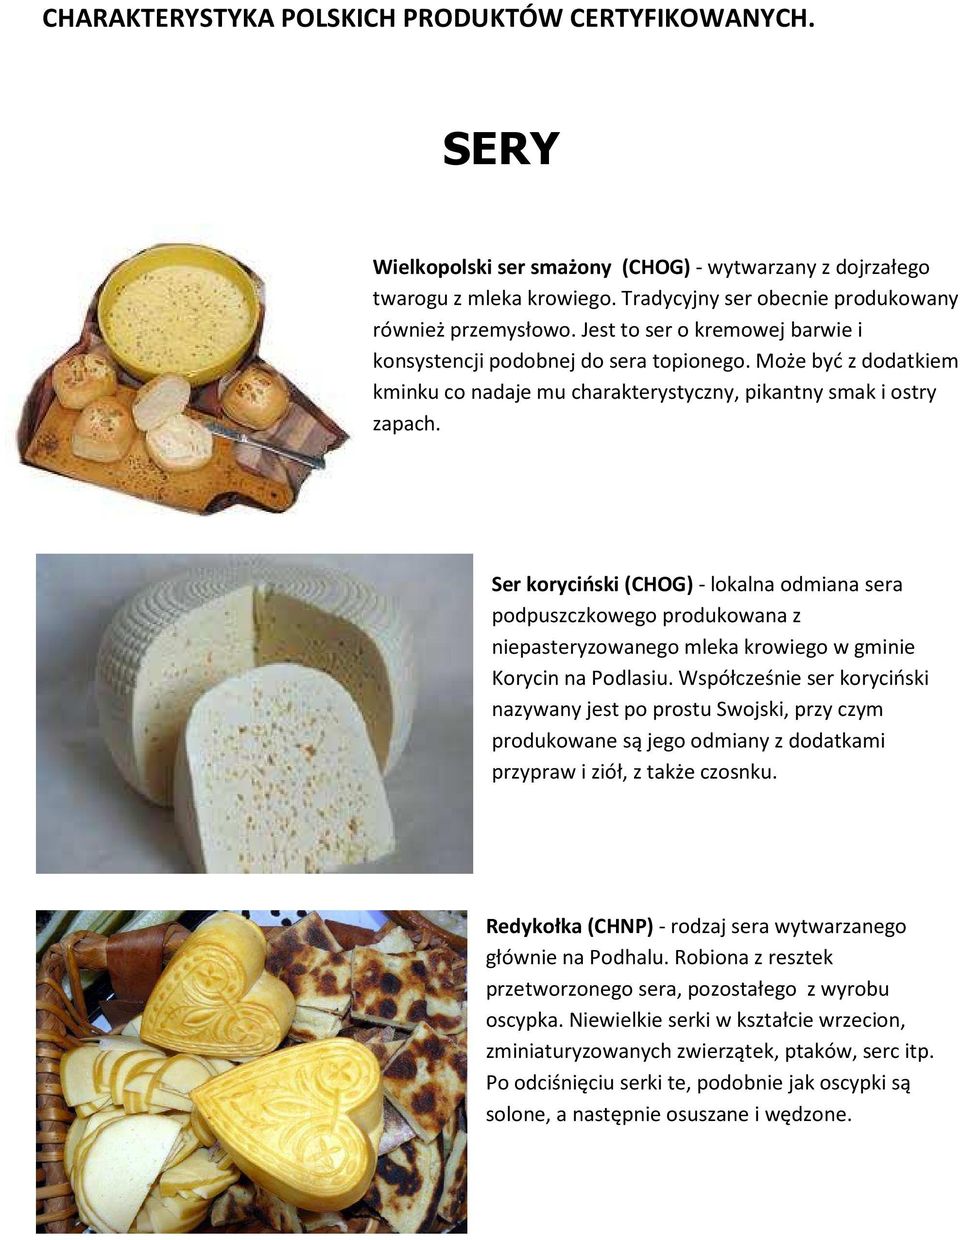 Ser koryciński (CHOG) - lokalna odmiana sera podpuszczkowego produkowana z niepasteryzowanego mleka krowiego w gminie Korycin na Podlasiu.